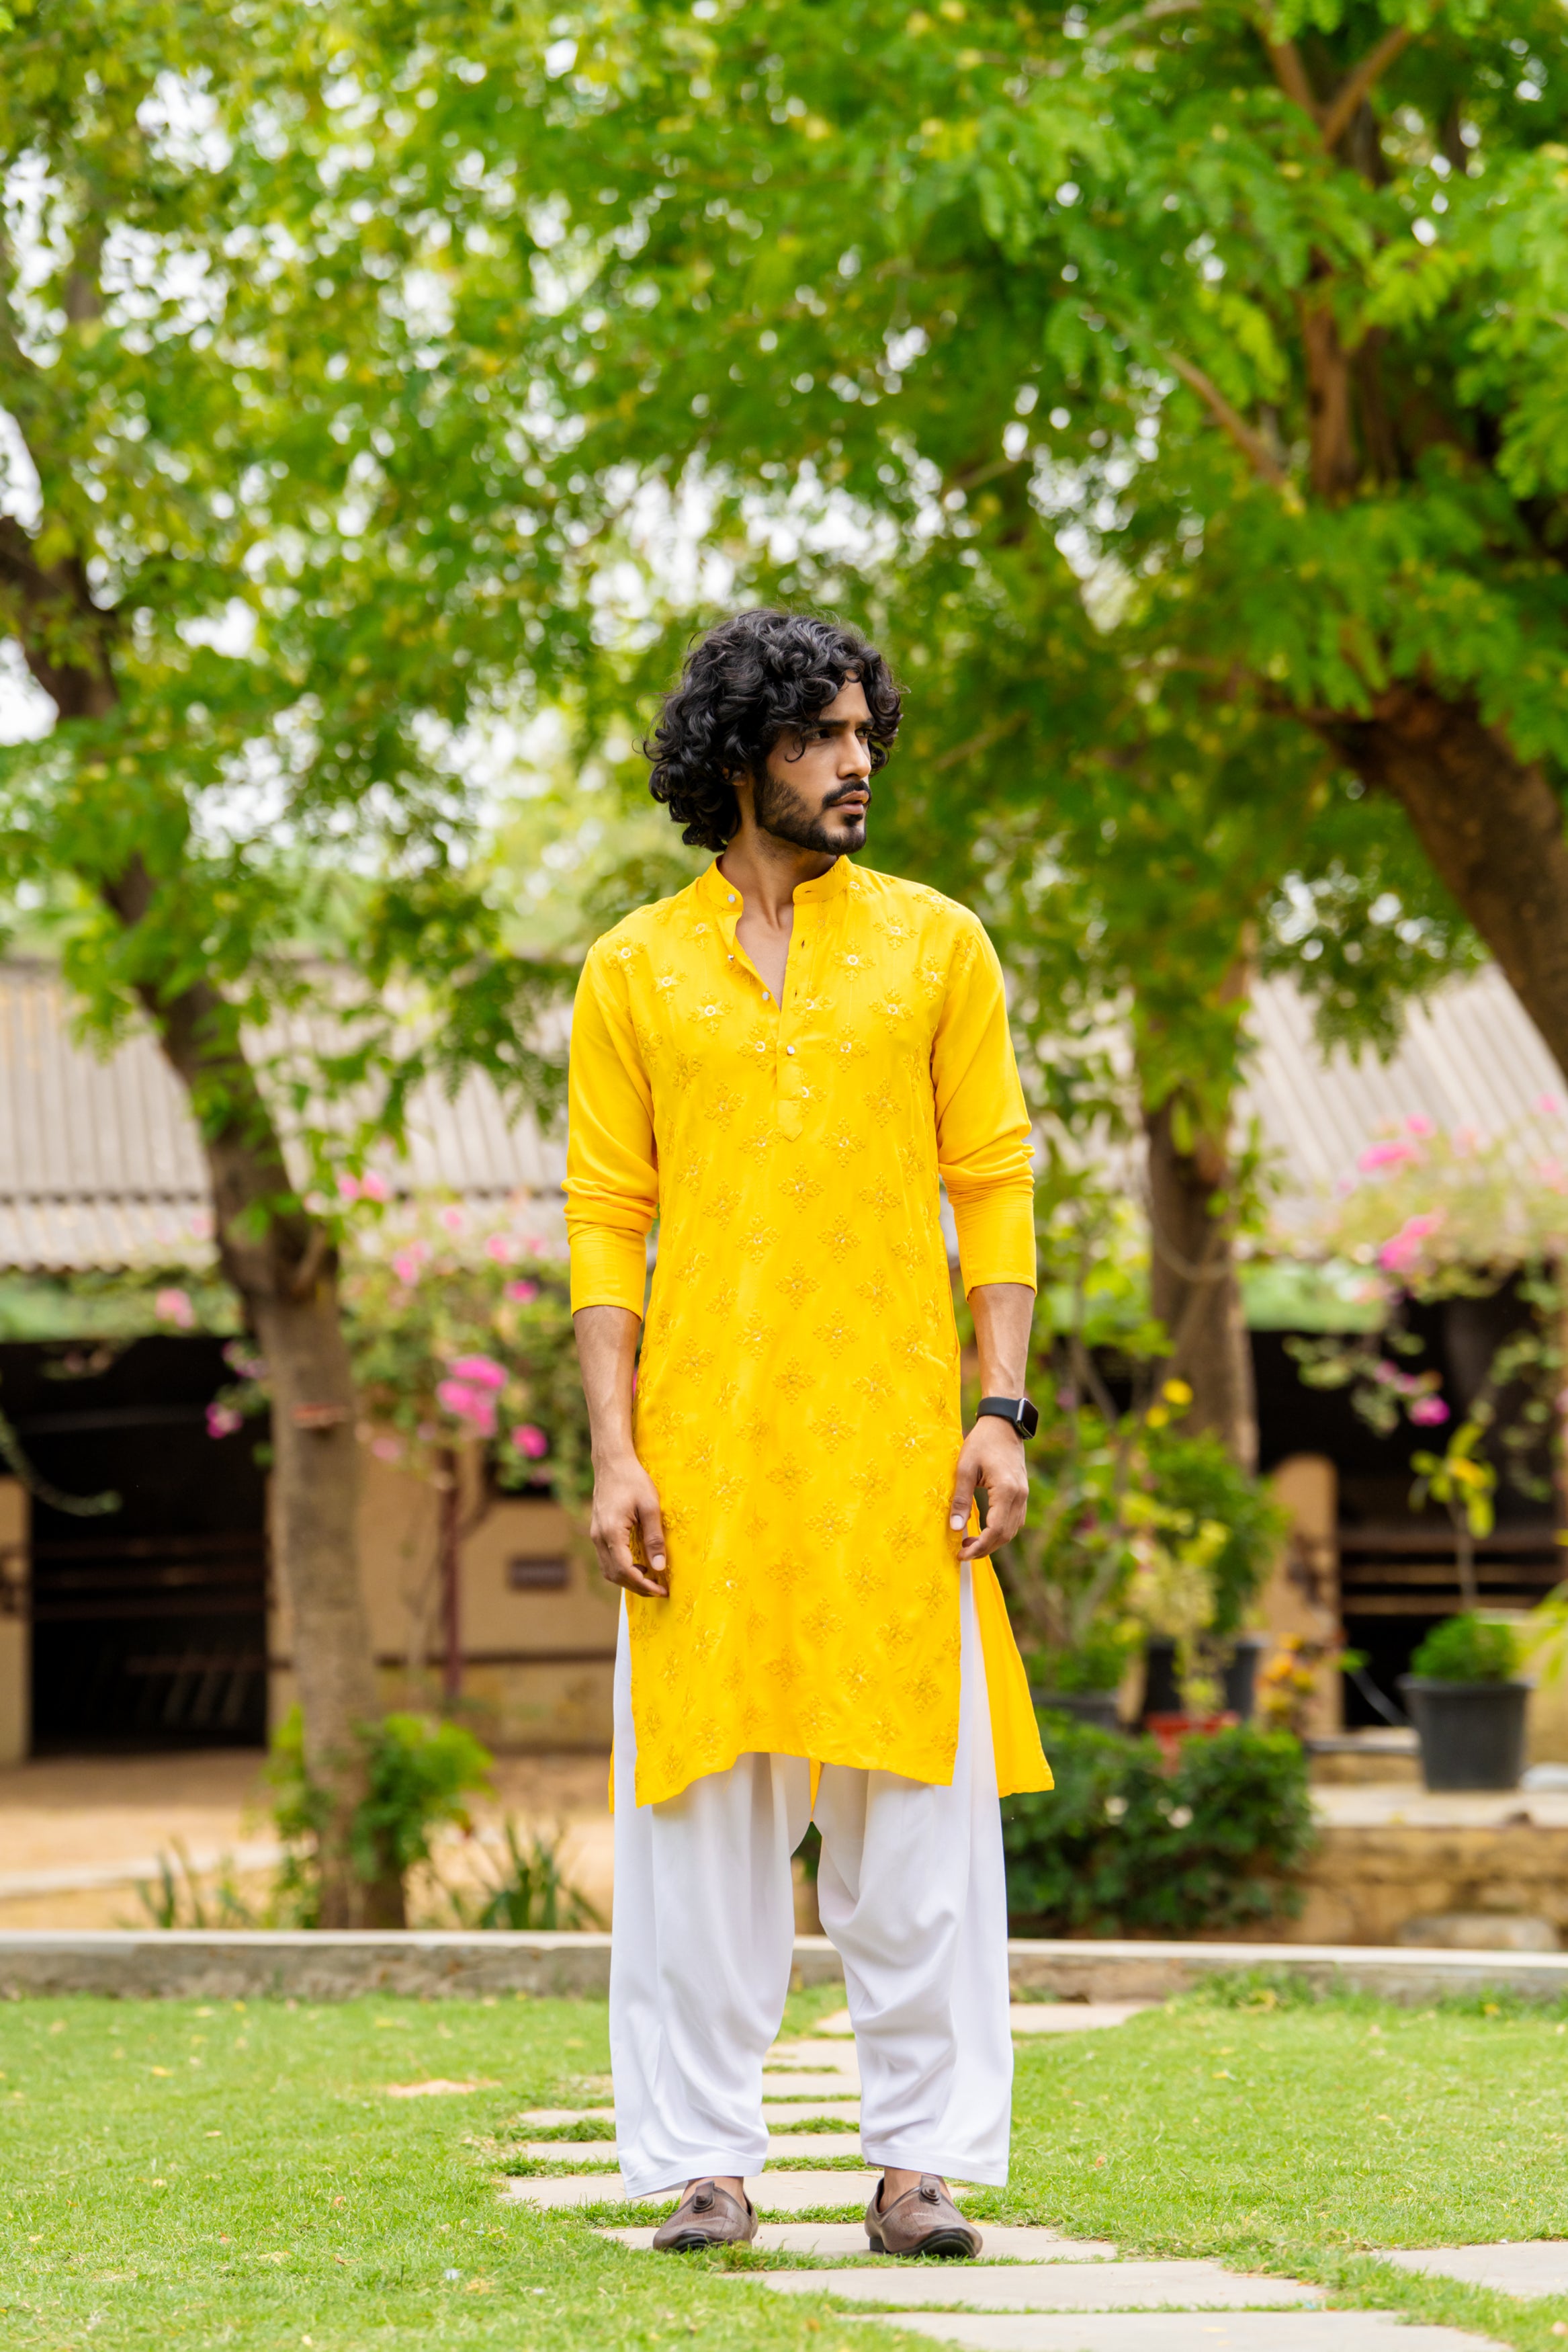 Firangi Yarn Yellow Chikan & Sequin Chikankari Motif Wedding Wear Cotton Kurta For Men - Laddu Peela